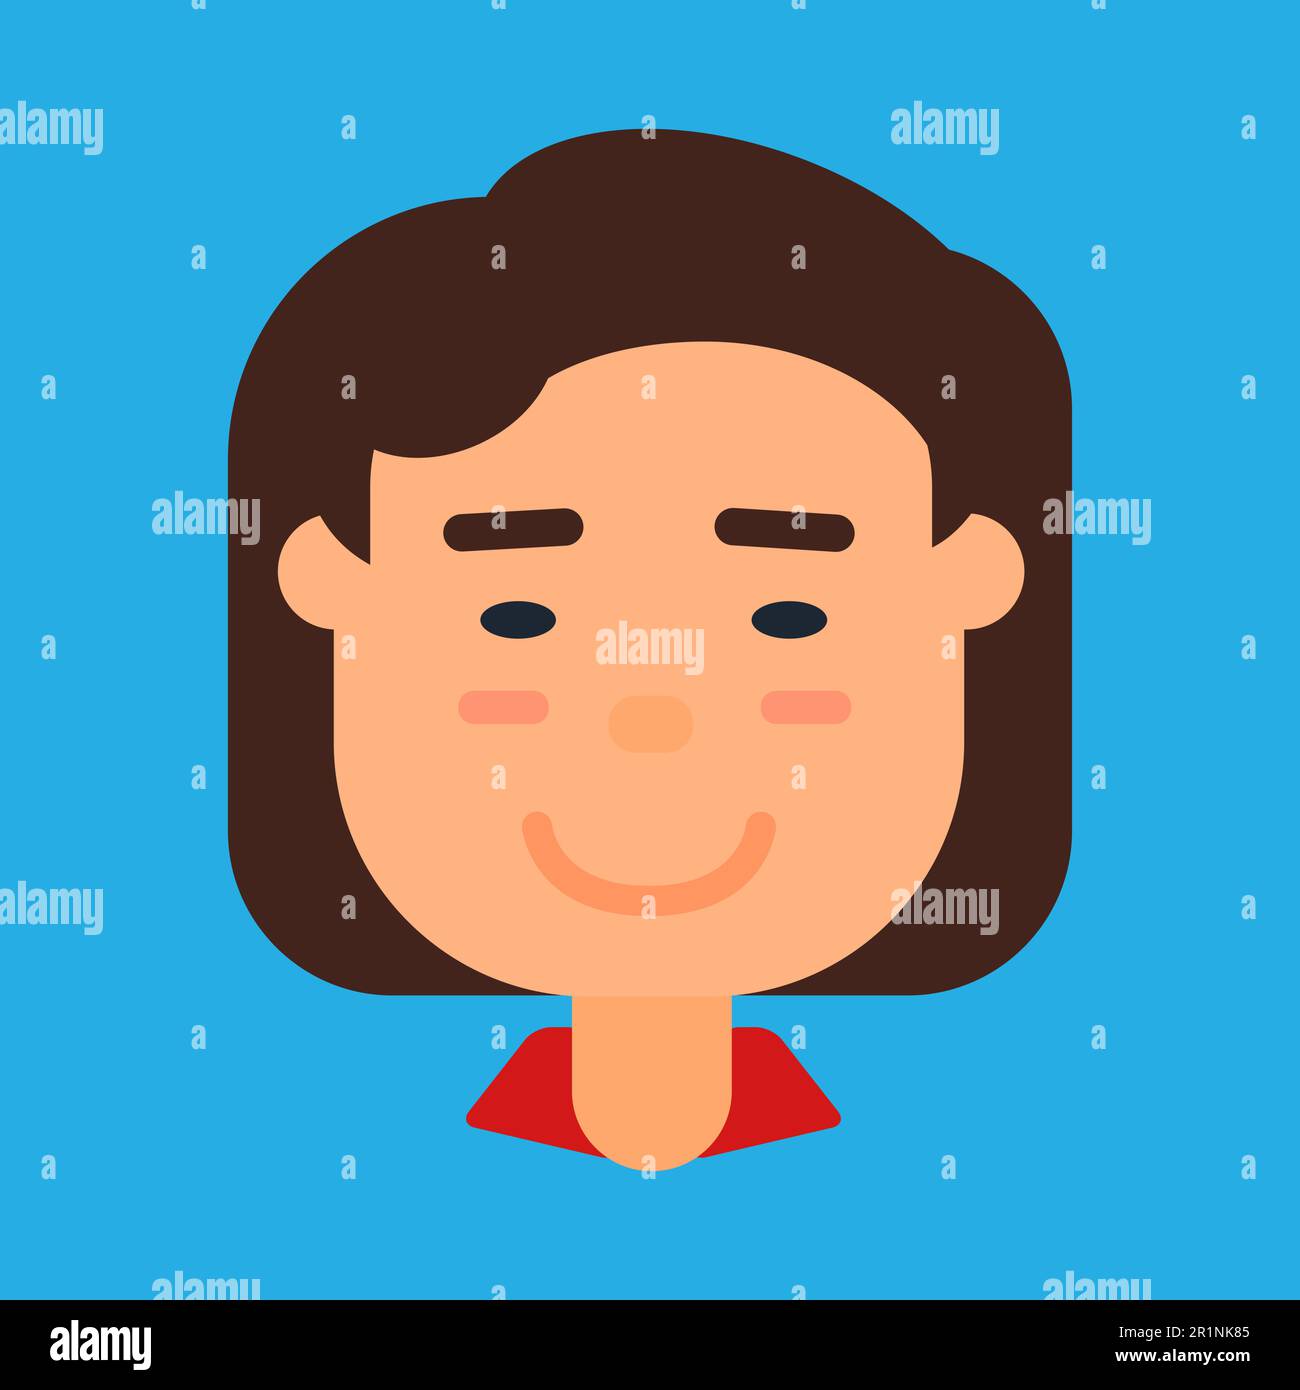 Avatar féminin chinois ou japonais, icône de profil de femme asiatique mignonne. Dessin animé d'une femme d'affaires ou d'un employé de l'est pour la conception d'icônes d'utilisateur de réseau. Vecteur il Illustration de Vecteur